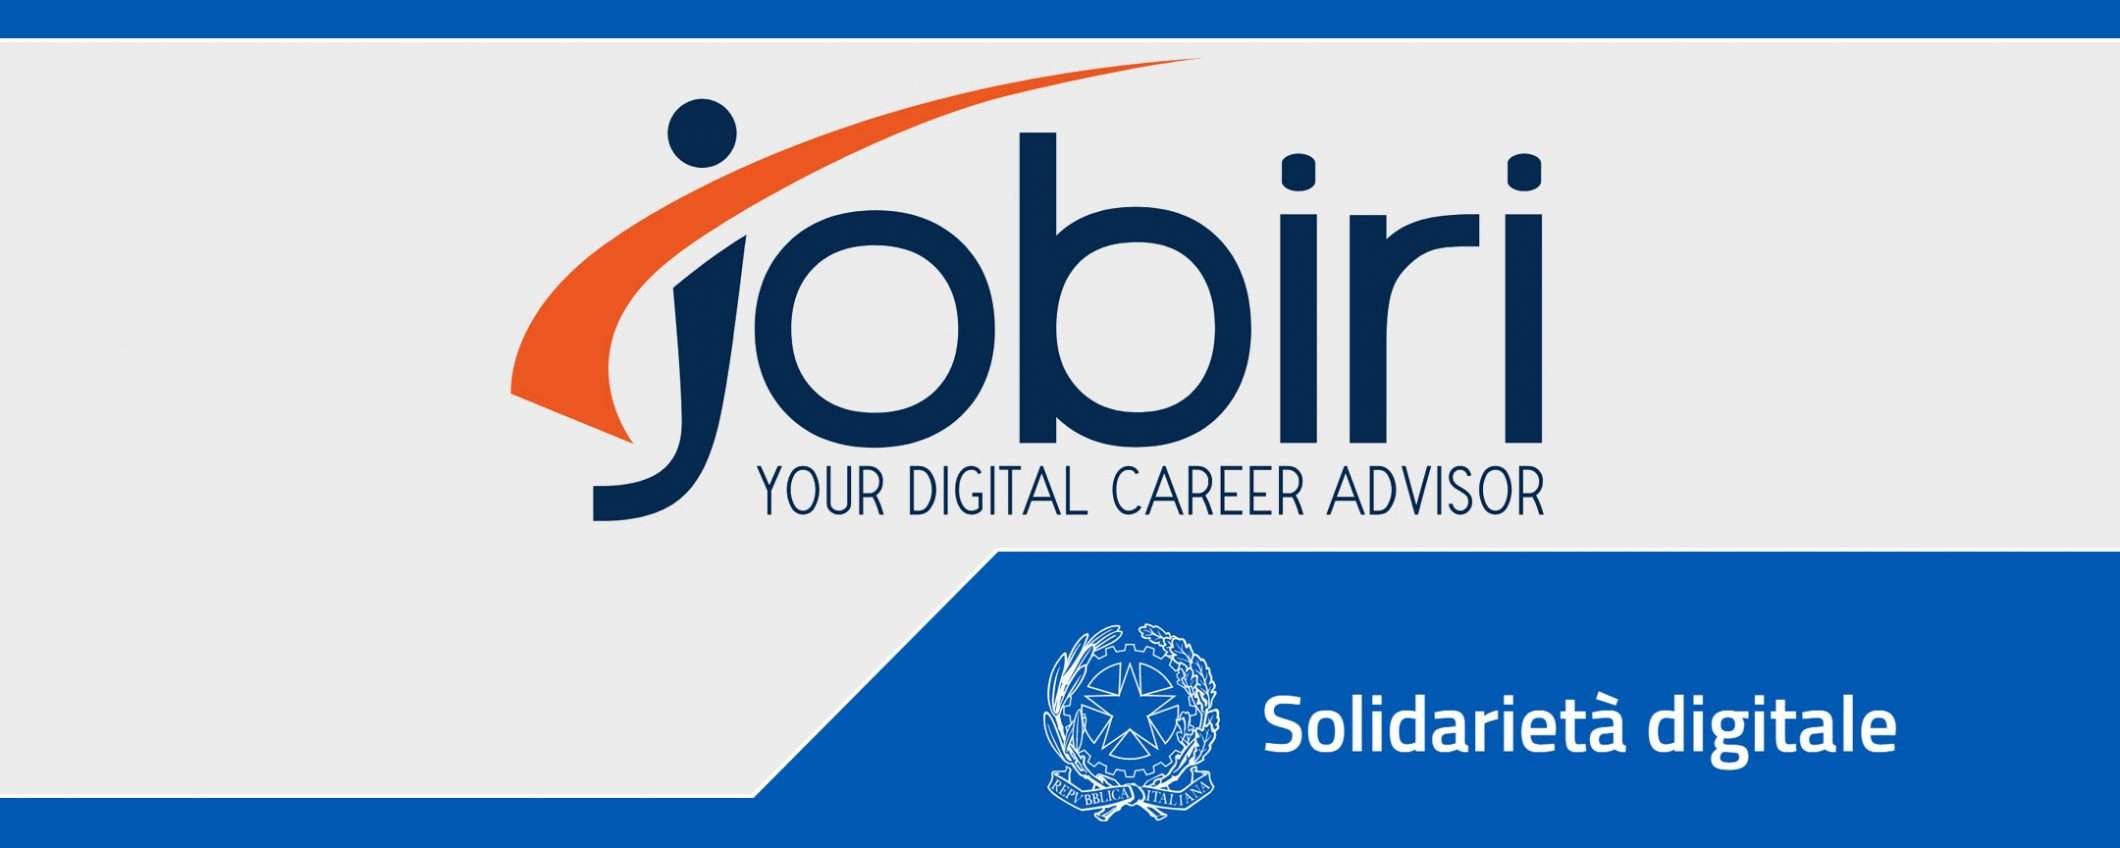 Solidarietà Digitale: Jobiri per trovare lavoro